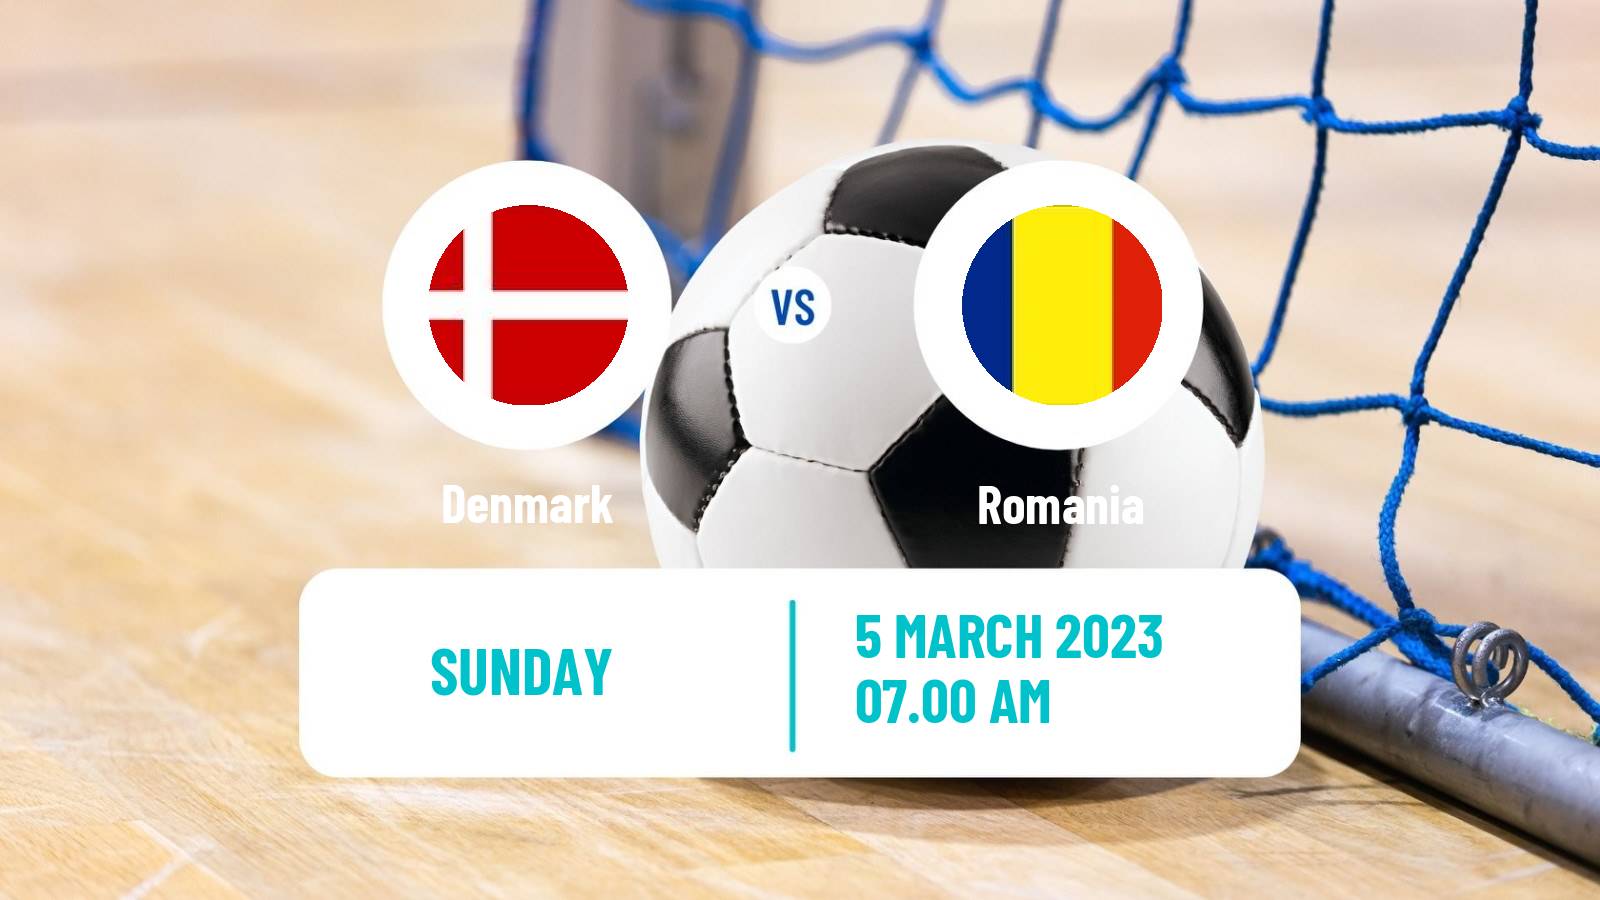 Futsal Futsal World Cup Denmark - Romania